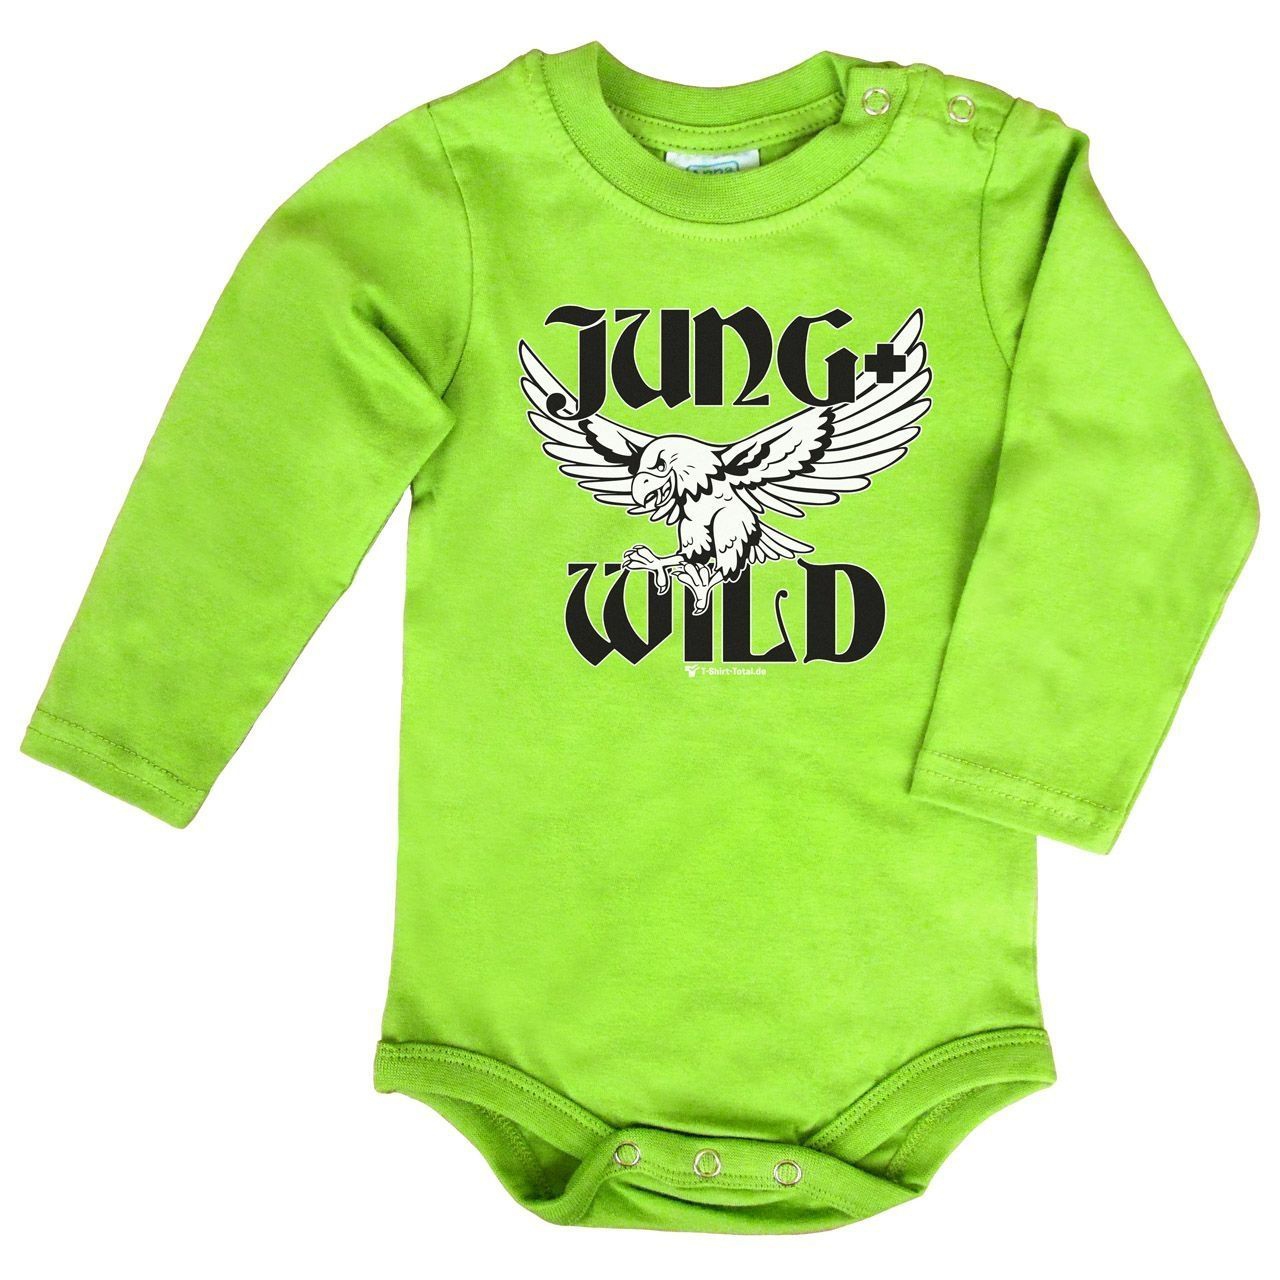 Jung und Wild Baby Body Langarm hellgrün 56 / 62